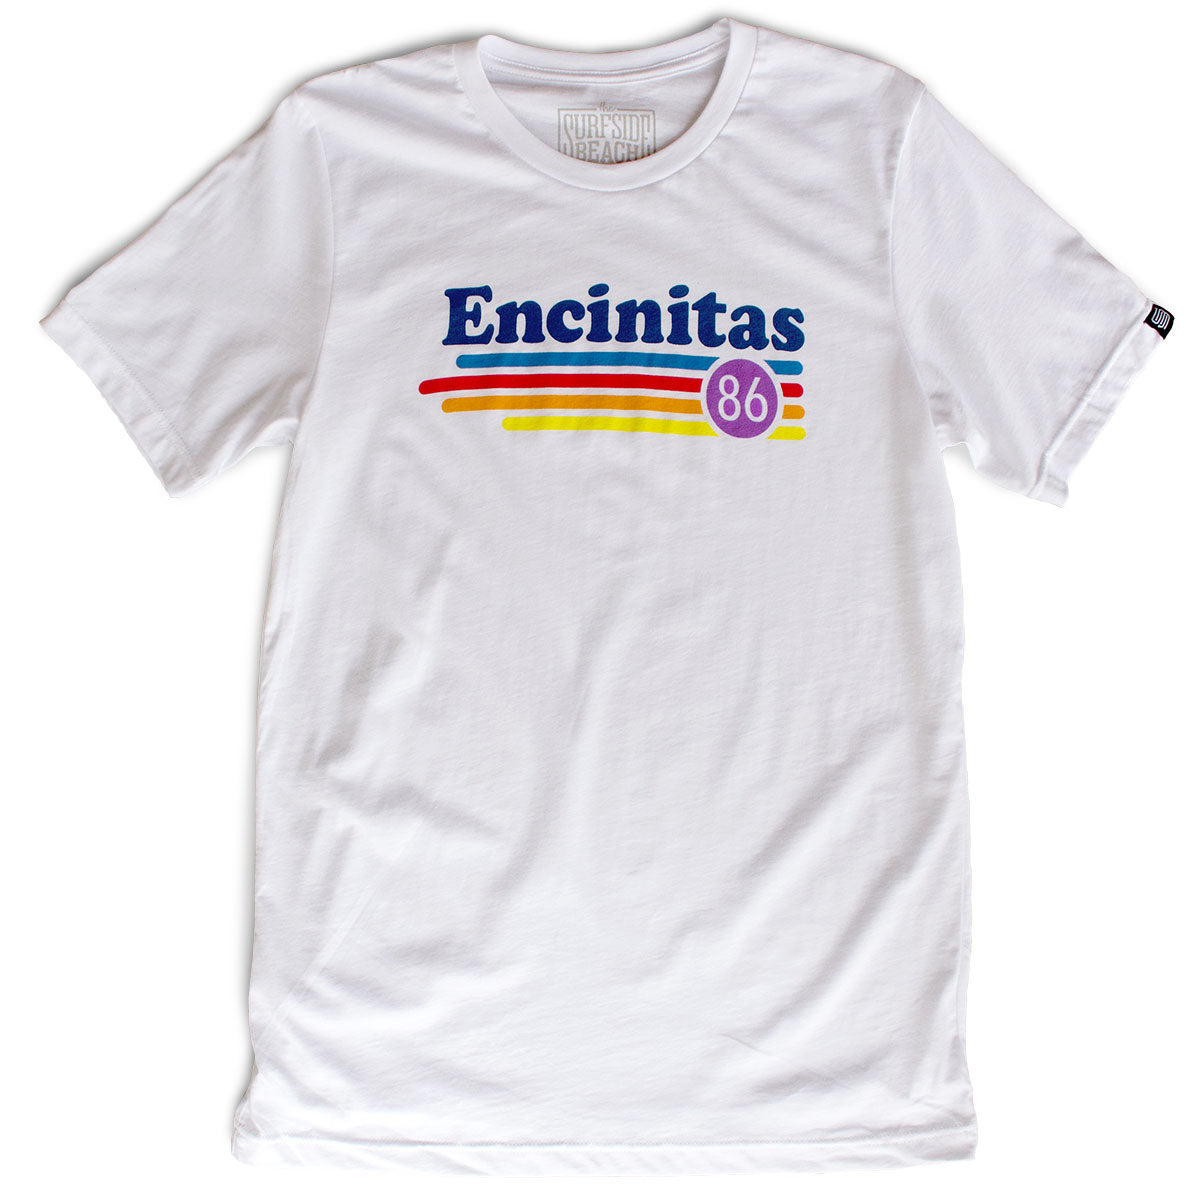 Encinitas (86) premium T-shirt